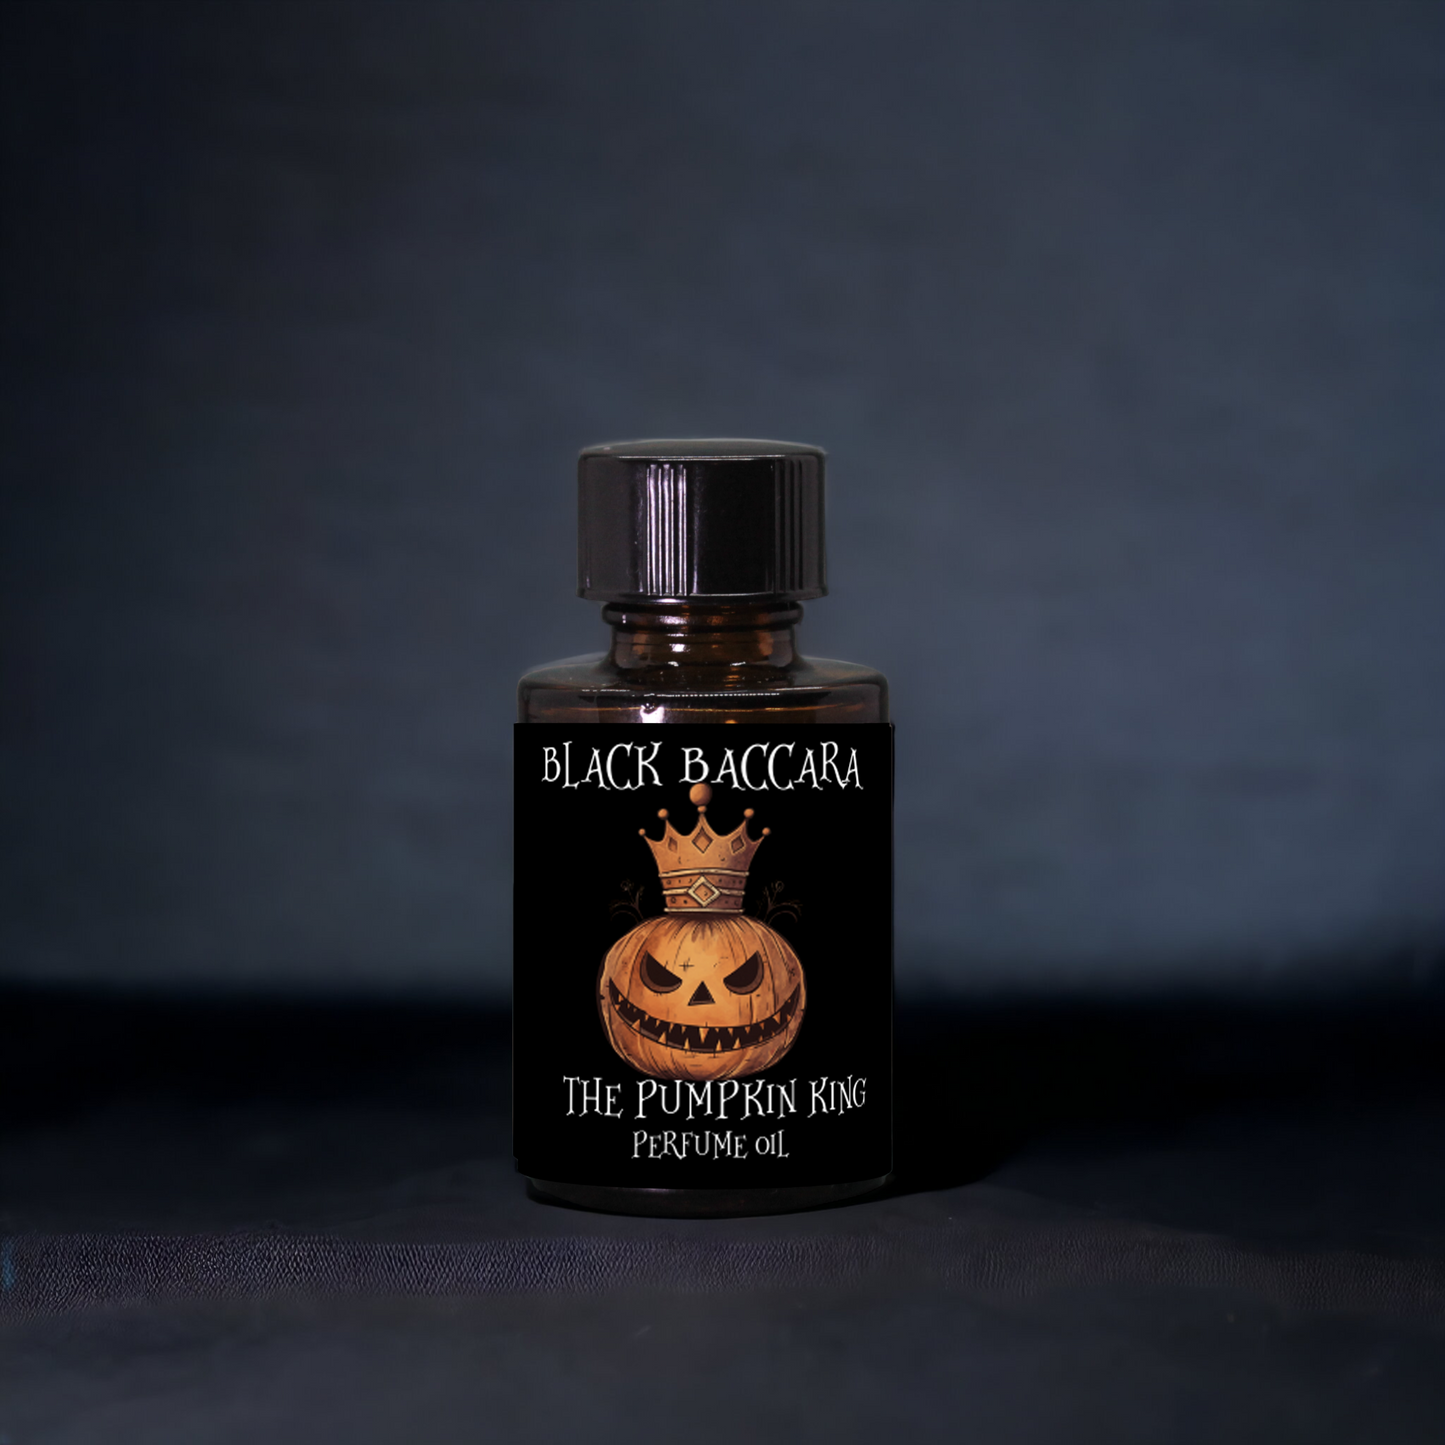 The Pumpkin King Perfume Oil